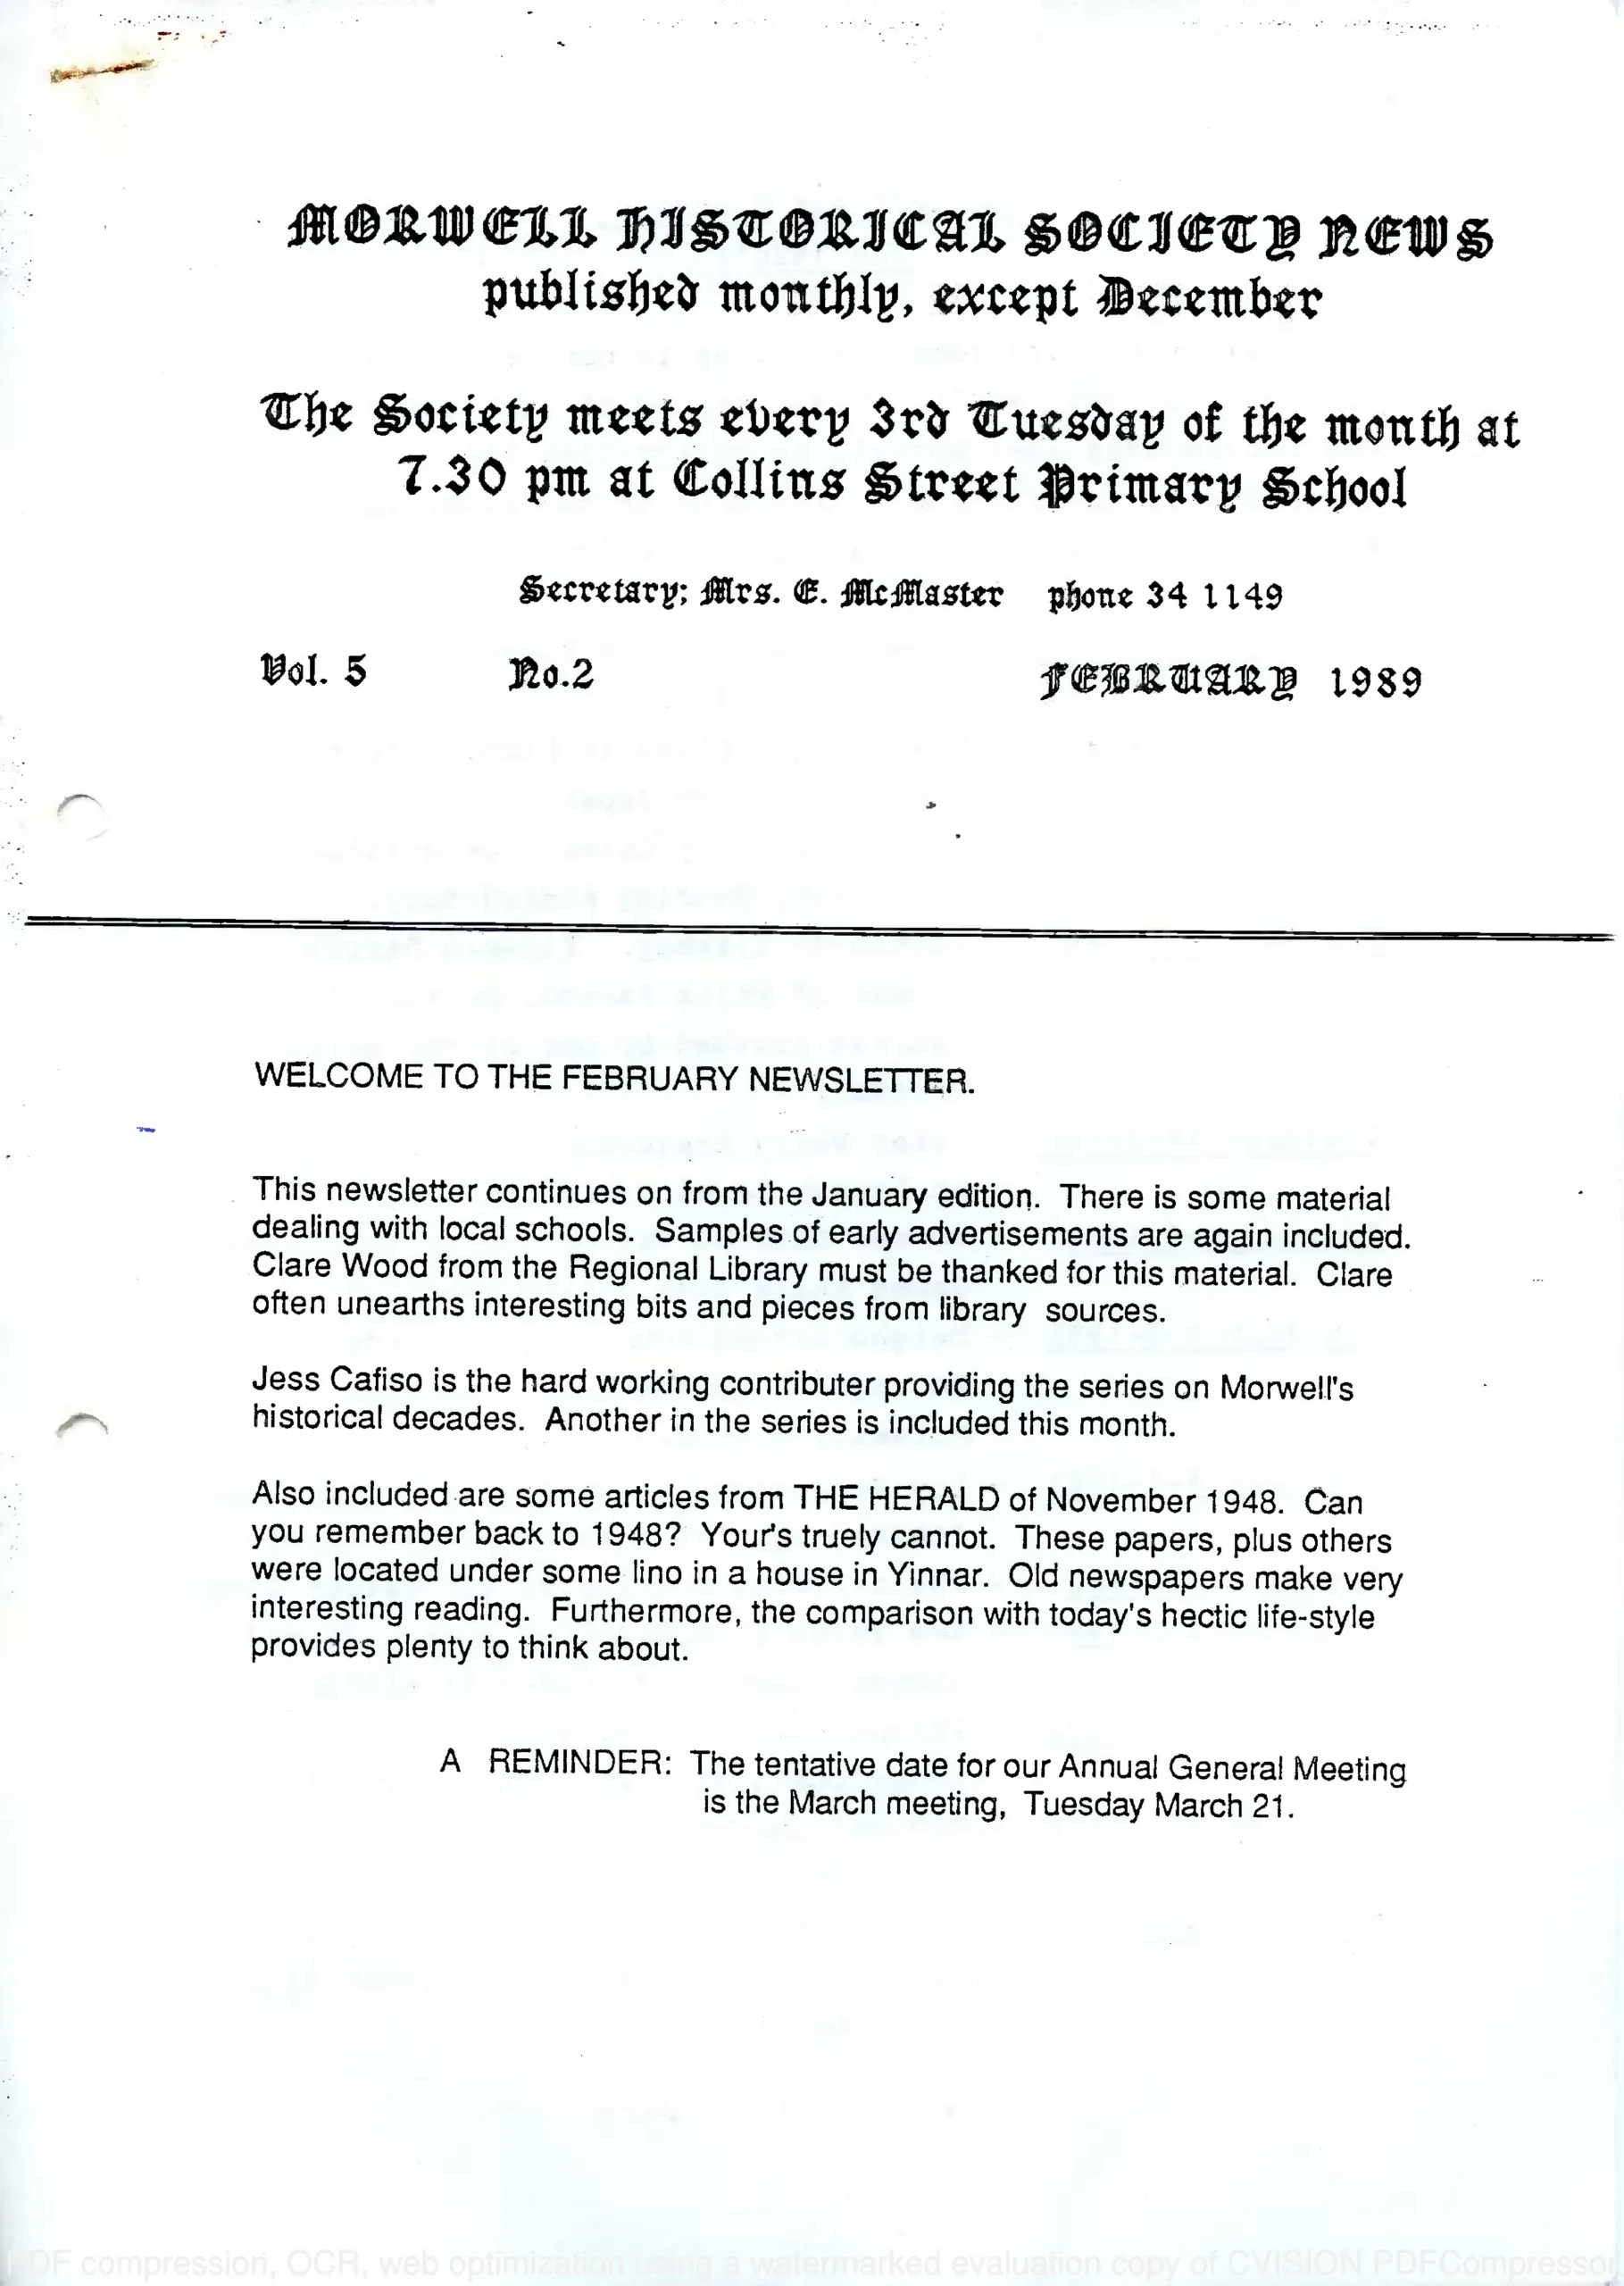 Newsletter February 1989